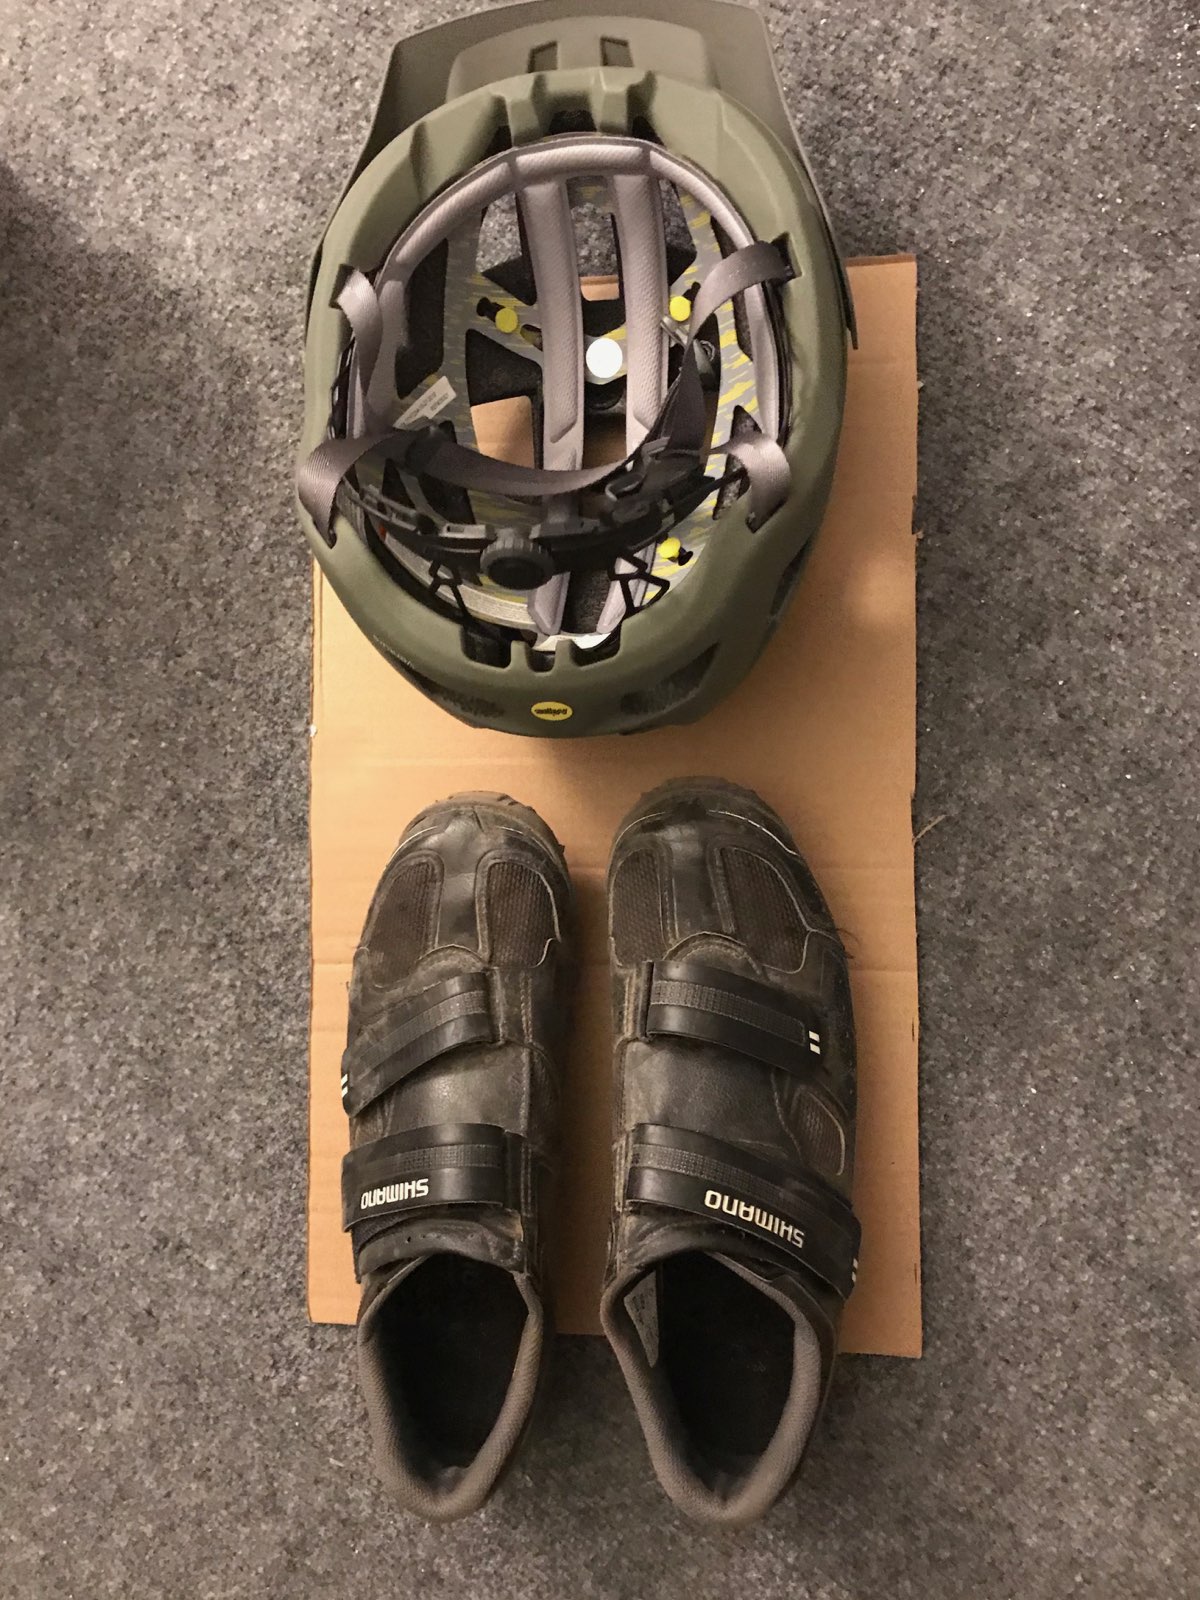 shoes & helmet.jpg